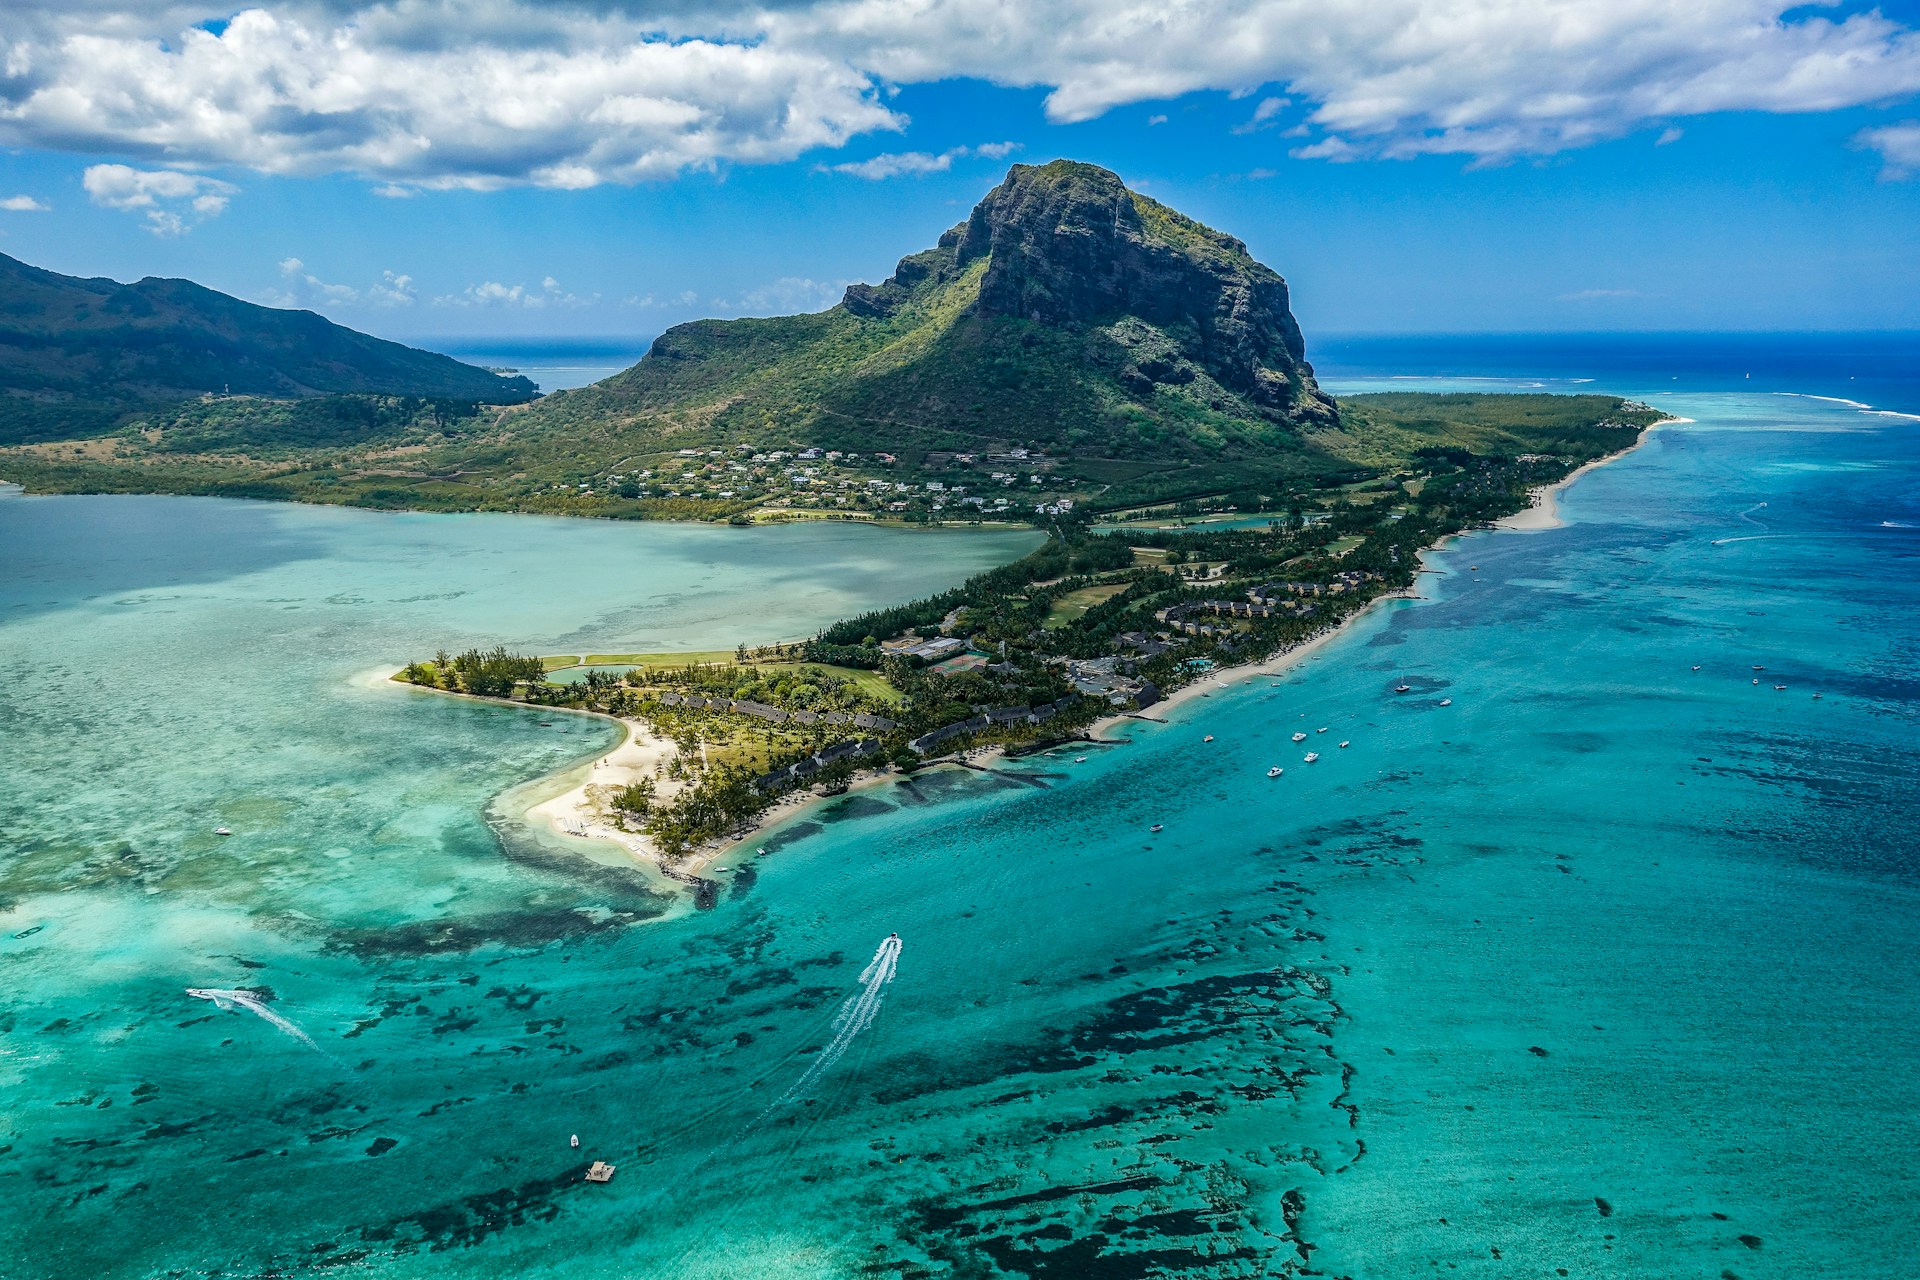 Luftaufnahme eines beeindruckenden tropischen Bergs neben einer Küstenlinie mit klarem türkisfarbenem Wasser, Korallenriffen und Booten, die nahe einem Strand mit Palmen und Unterkünften zu sehen sind.